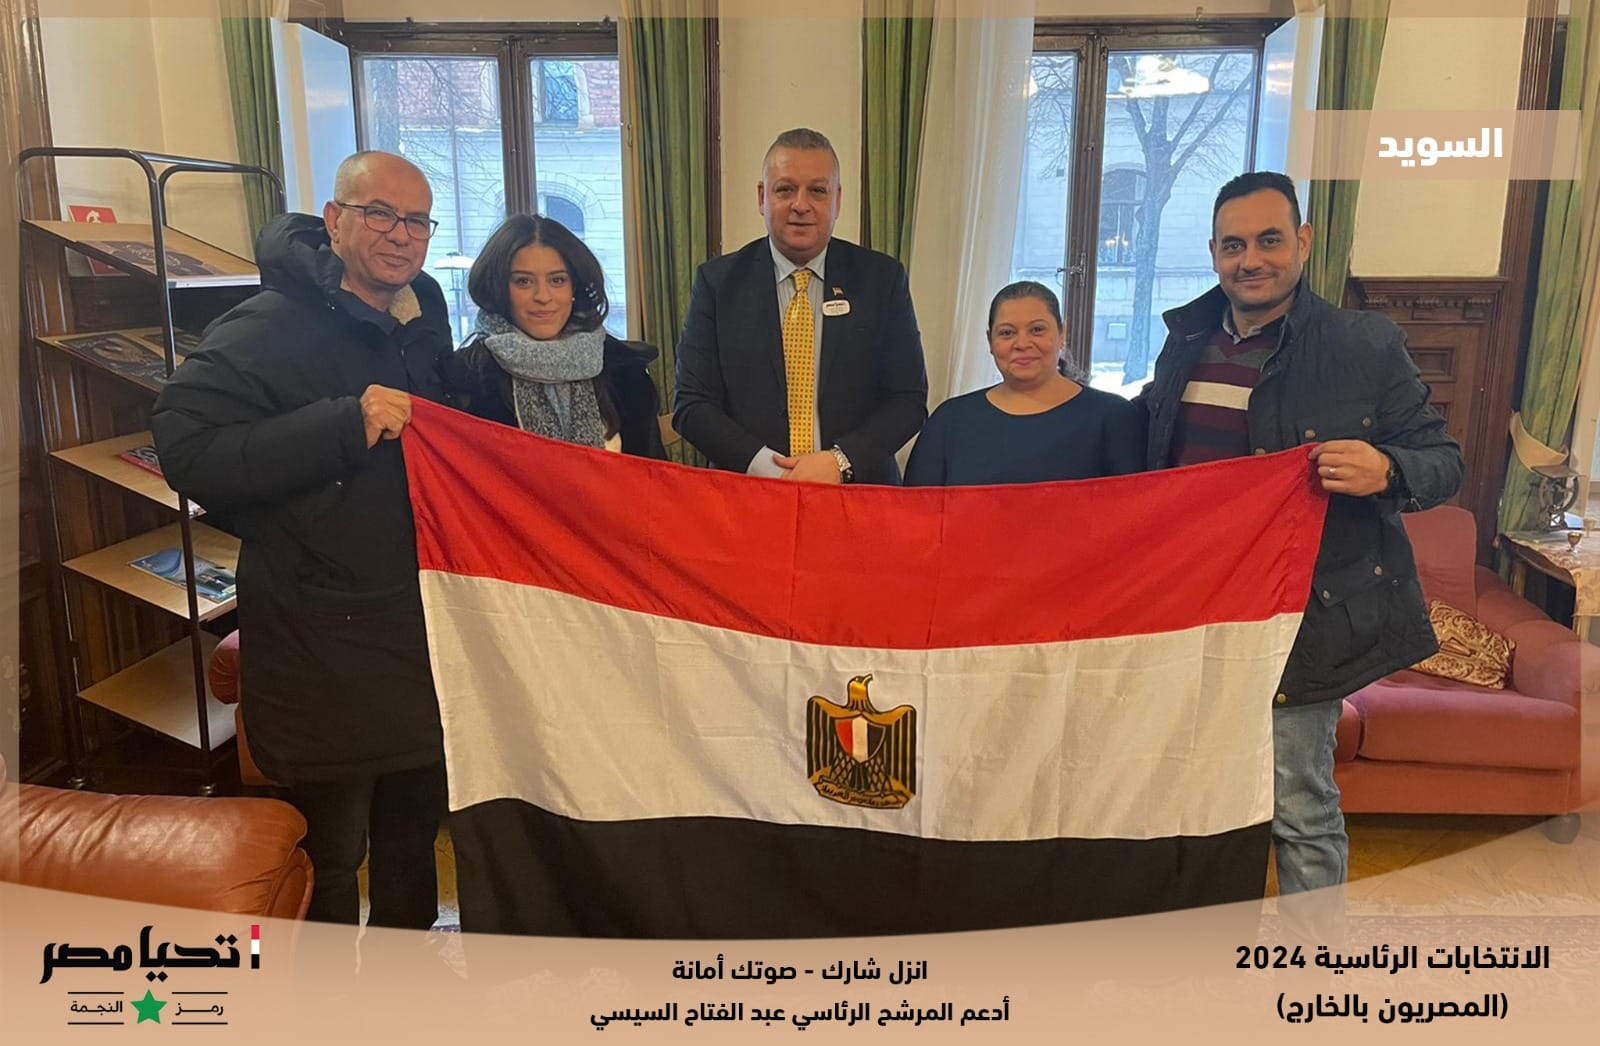 المصريون بالخارج في السويد يشاركون بفاعلية في الانتخابات الرئاسية | صور 